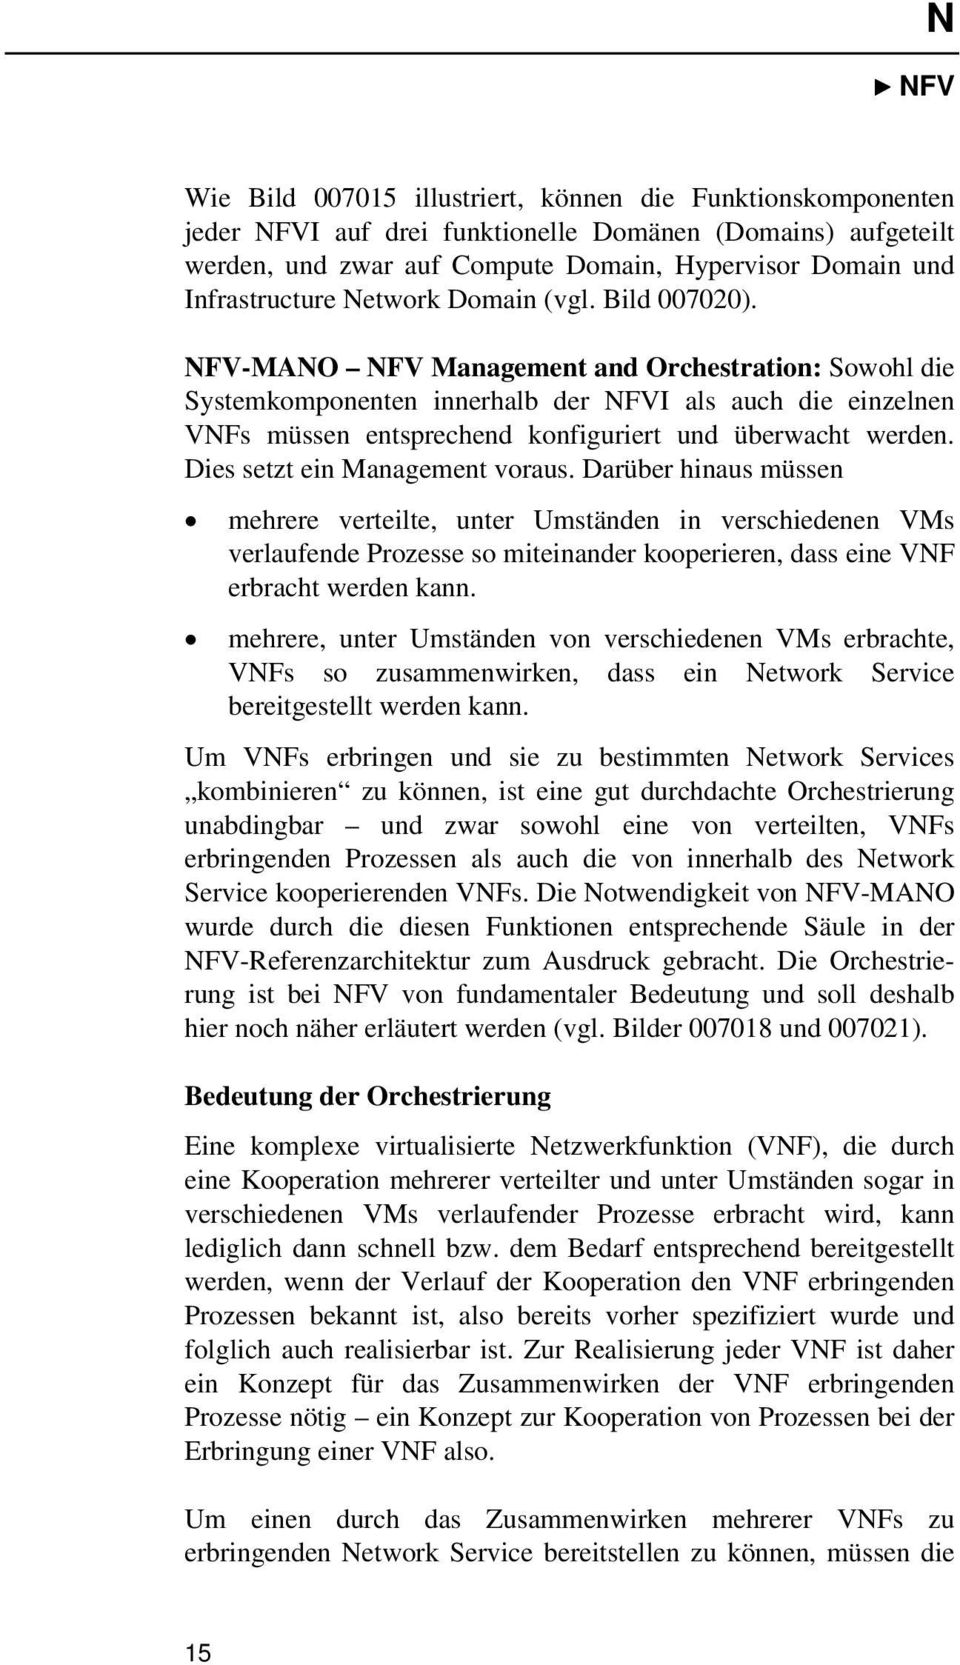 NFV-MANO NFV Management and Orchestration: Sowohl die Systemkomponenten innerhalb der NFVI als auch die einzelnen VNFs müssen entsprechend konfiguriert und überwacht werden.